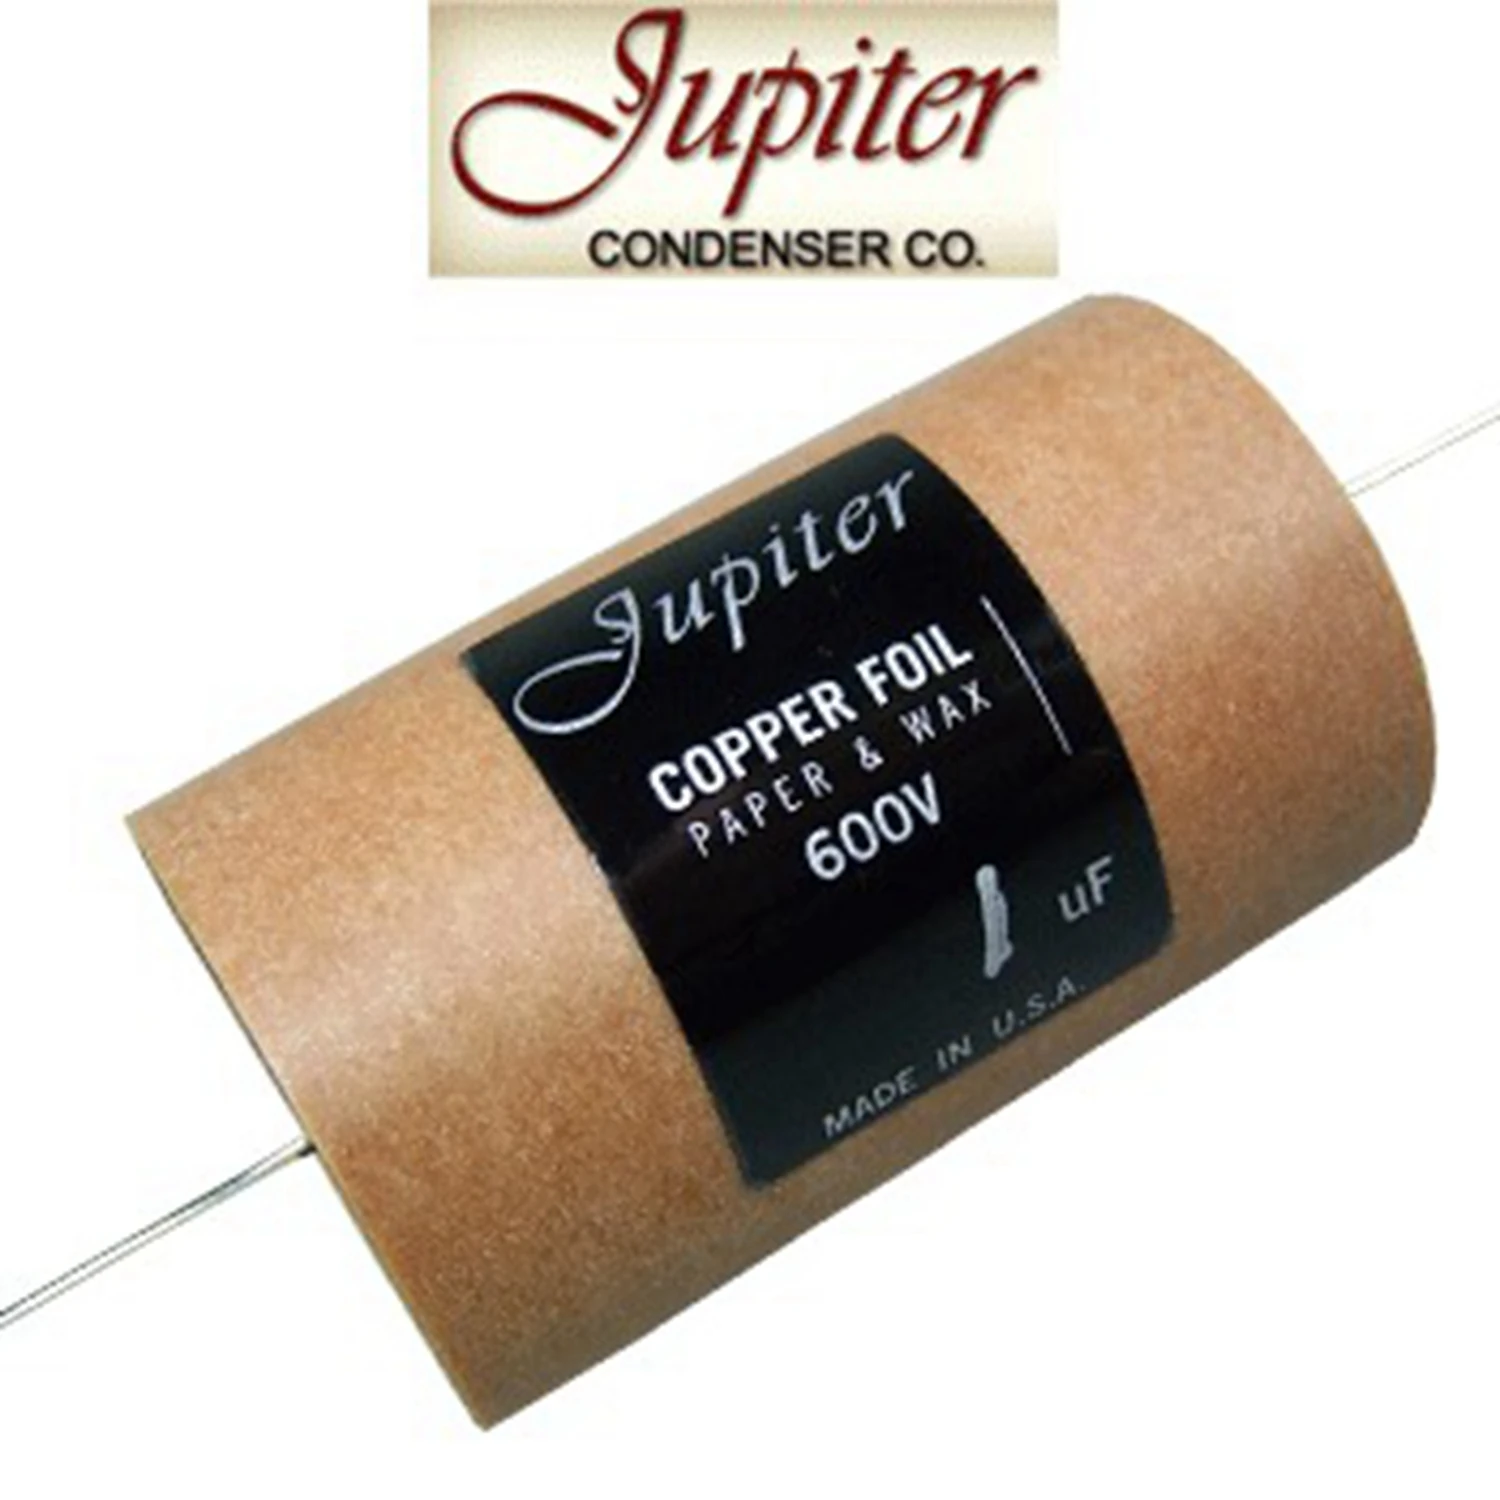 1pcs Original American jupiter Copper Foil Paper & Wax Capacitors series 5% 80C 100V/400V/600V Audio capacitor free shipping